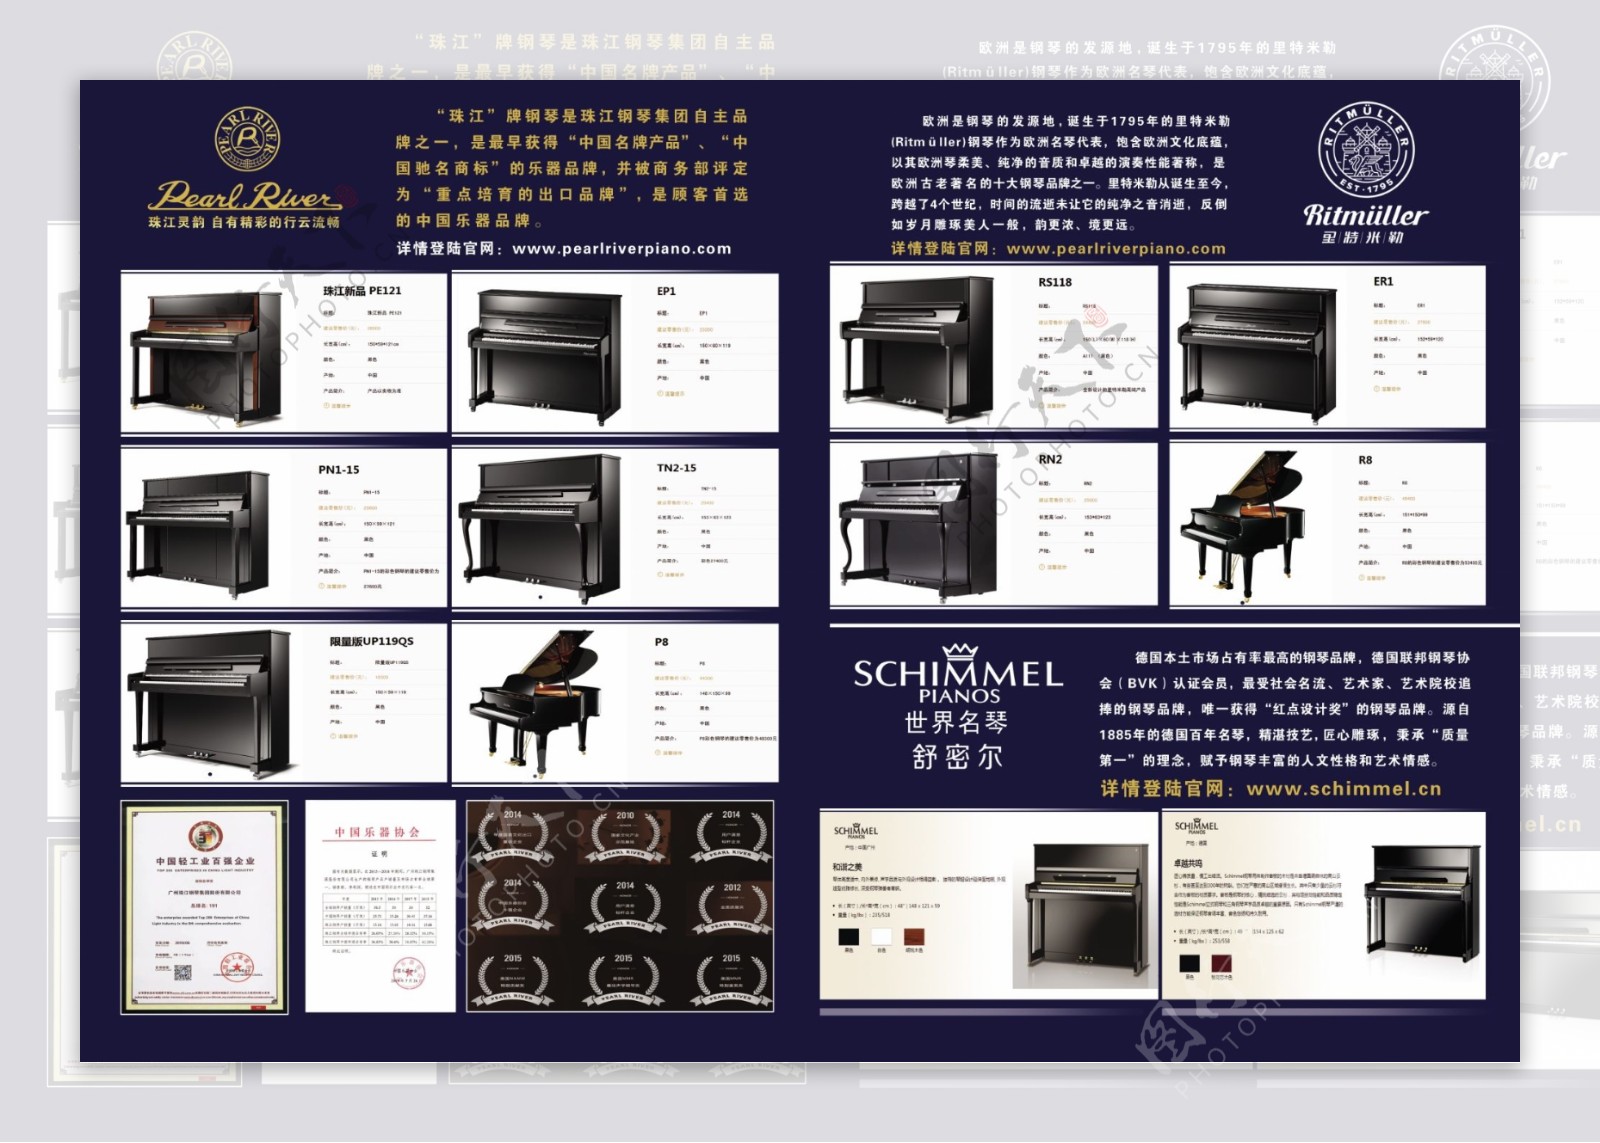 珠江品牌钢琴